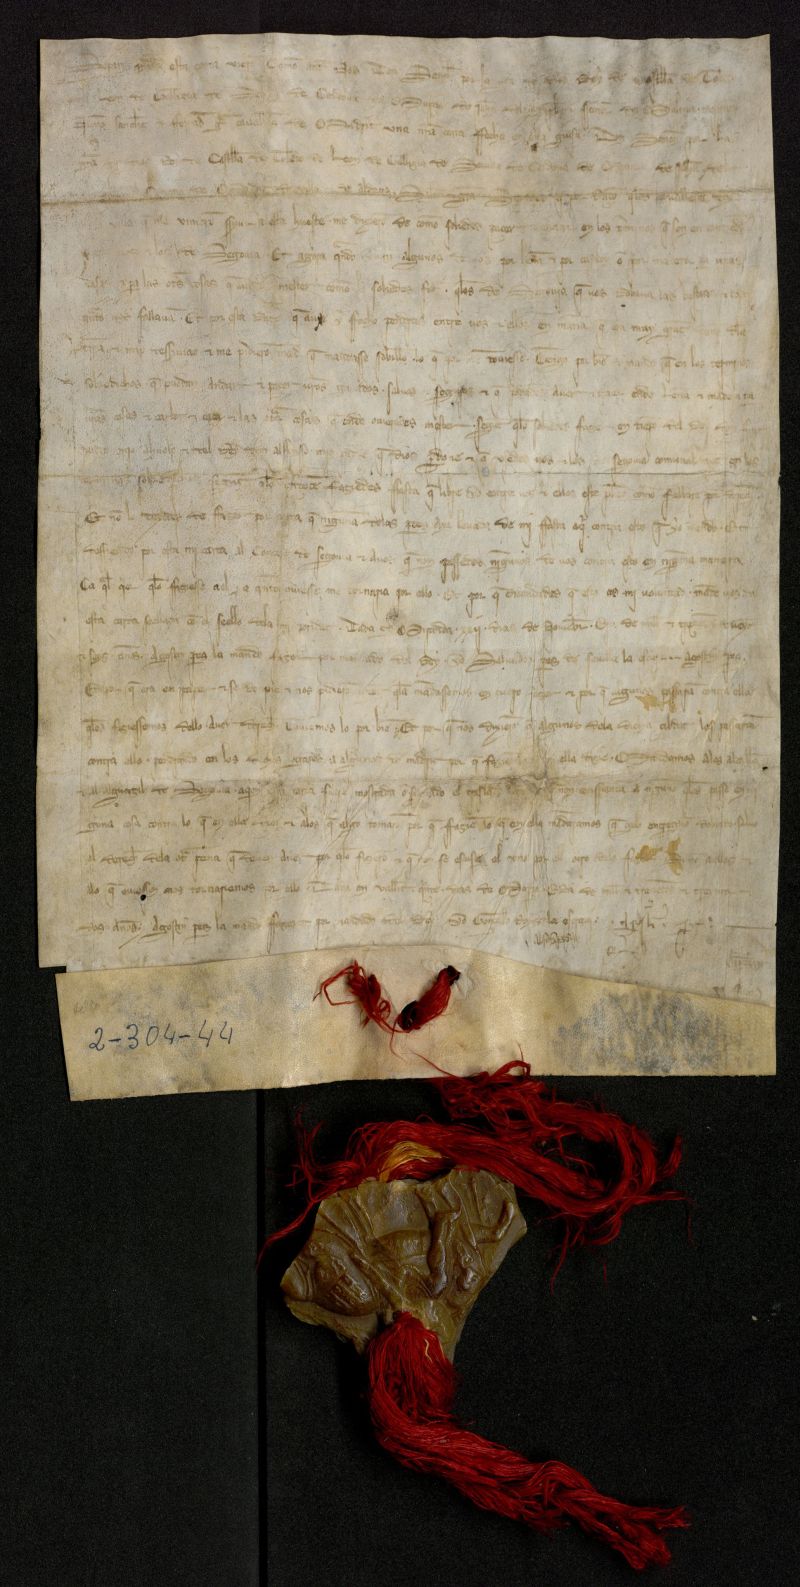 Privilegio de Sancho IV confirmando a Madrid sus derechos sobre pastos, caza y leña en el Real de Manzanares